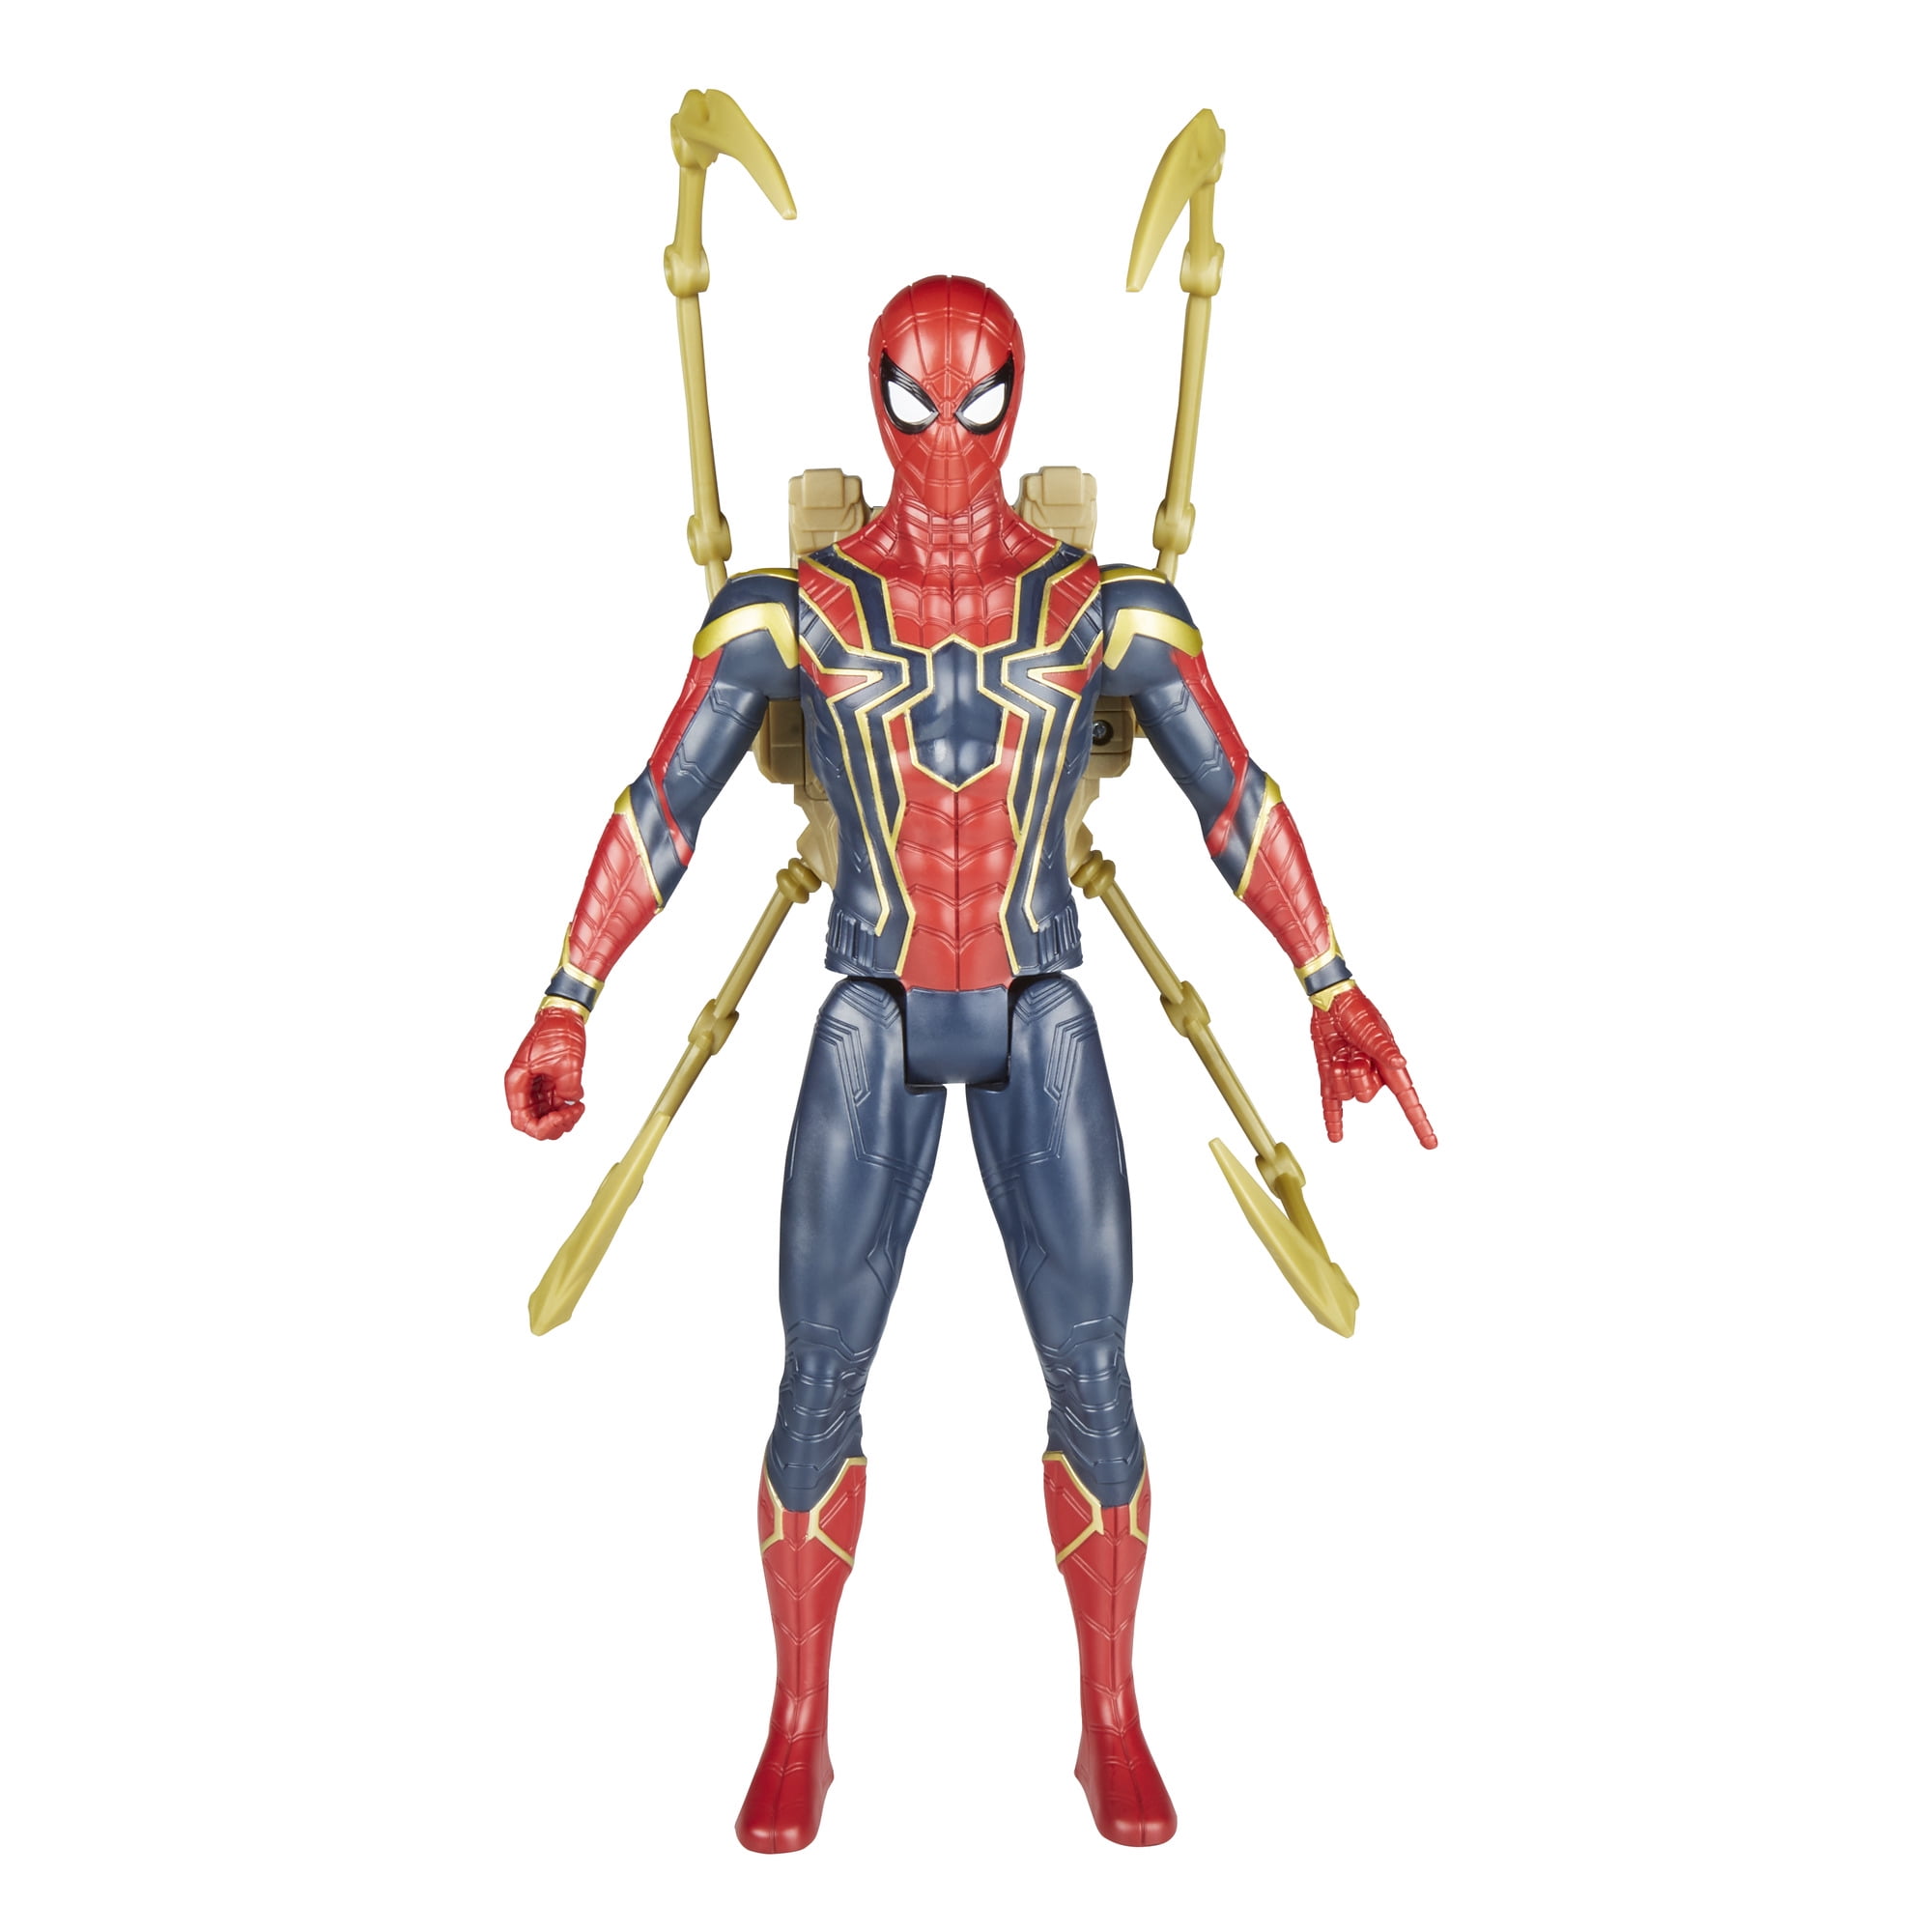 Hasbro Titan Hero Series Power FX Avengers Infinity War Iron Spider Spanish HTF 